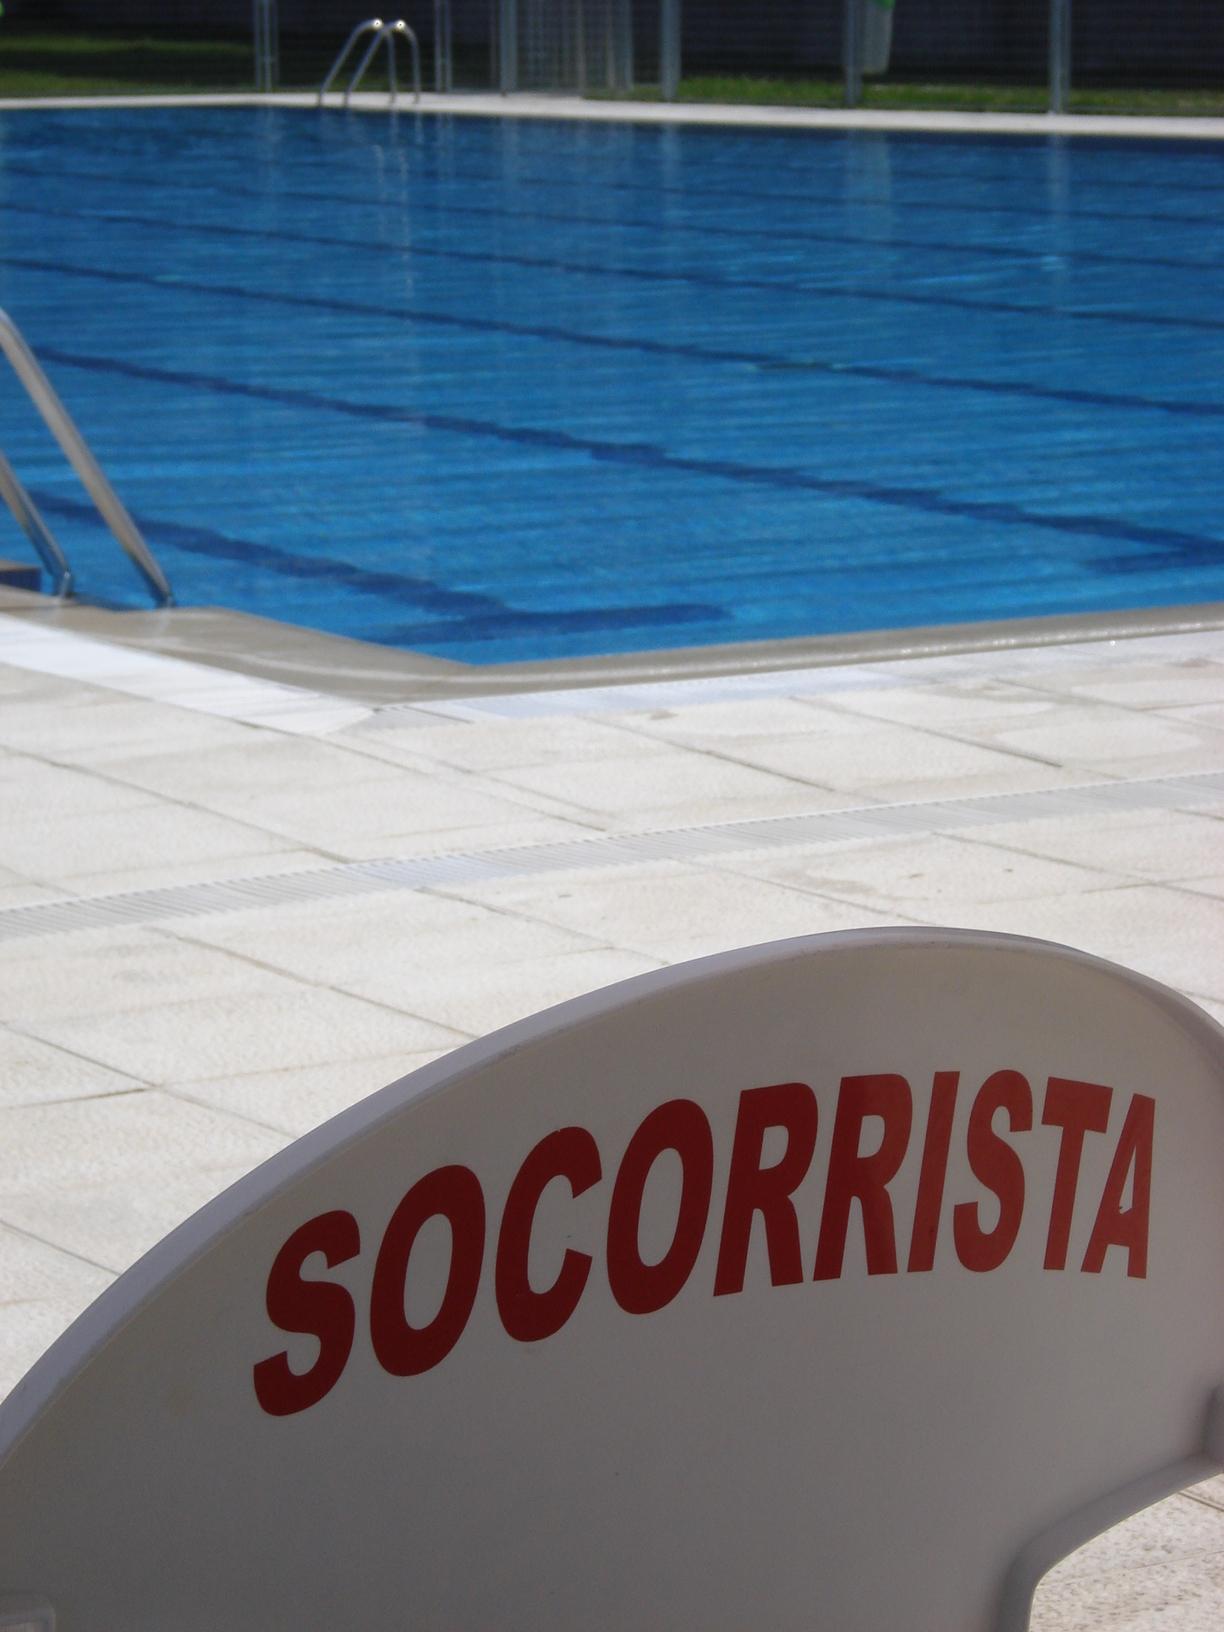 Imagen de la silla de un socorrista acuático en una piscina con el letrero Socorrista